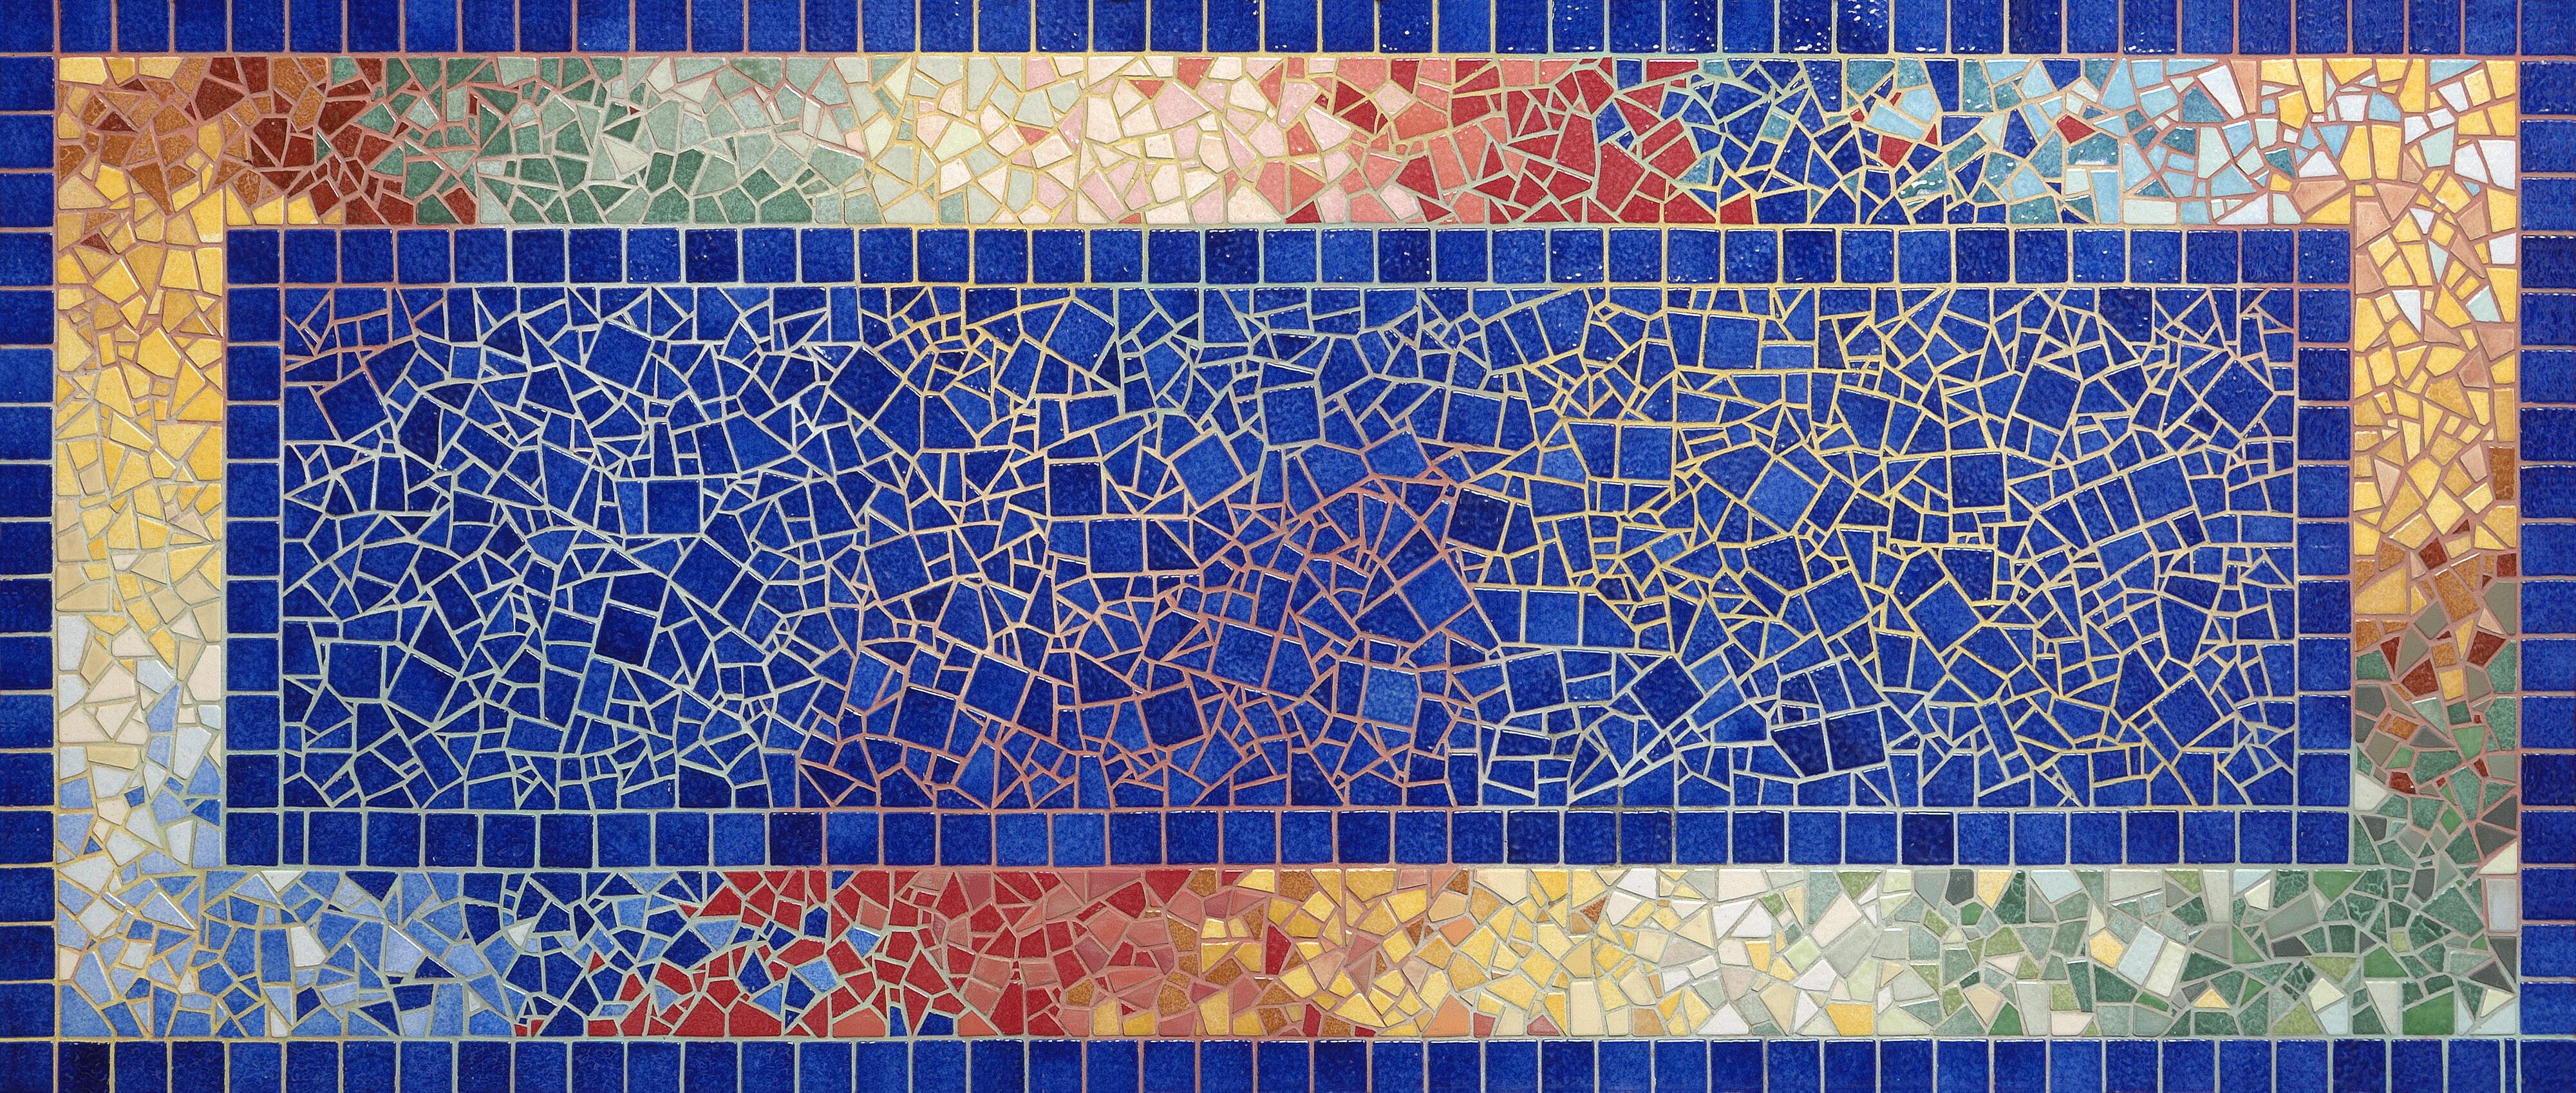 Rechthoekig mozaiektafelblad met blauwe groene, gele, bruine en rode steentjes en gekleurde voeg.